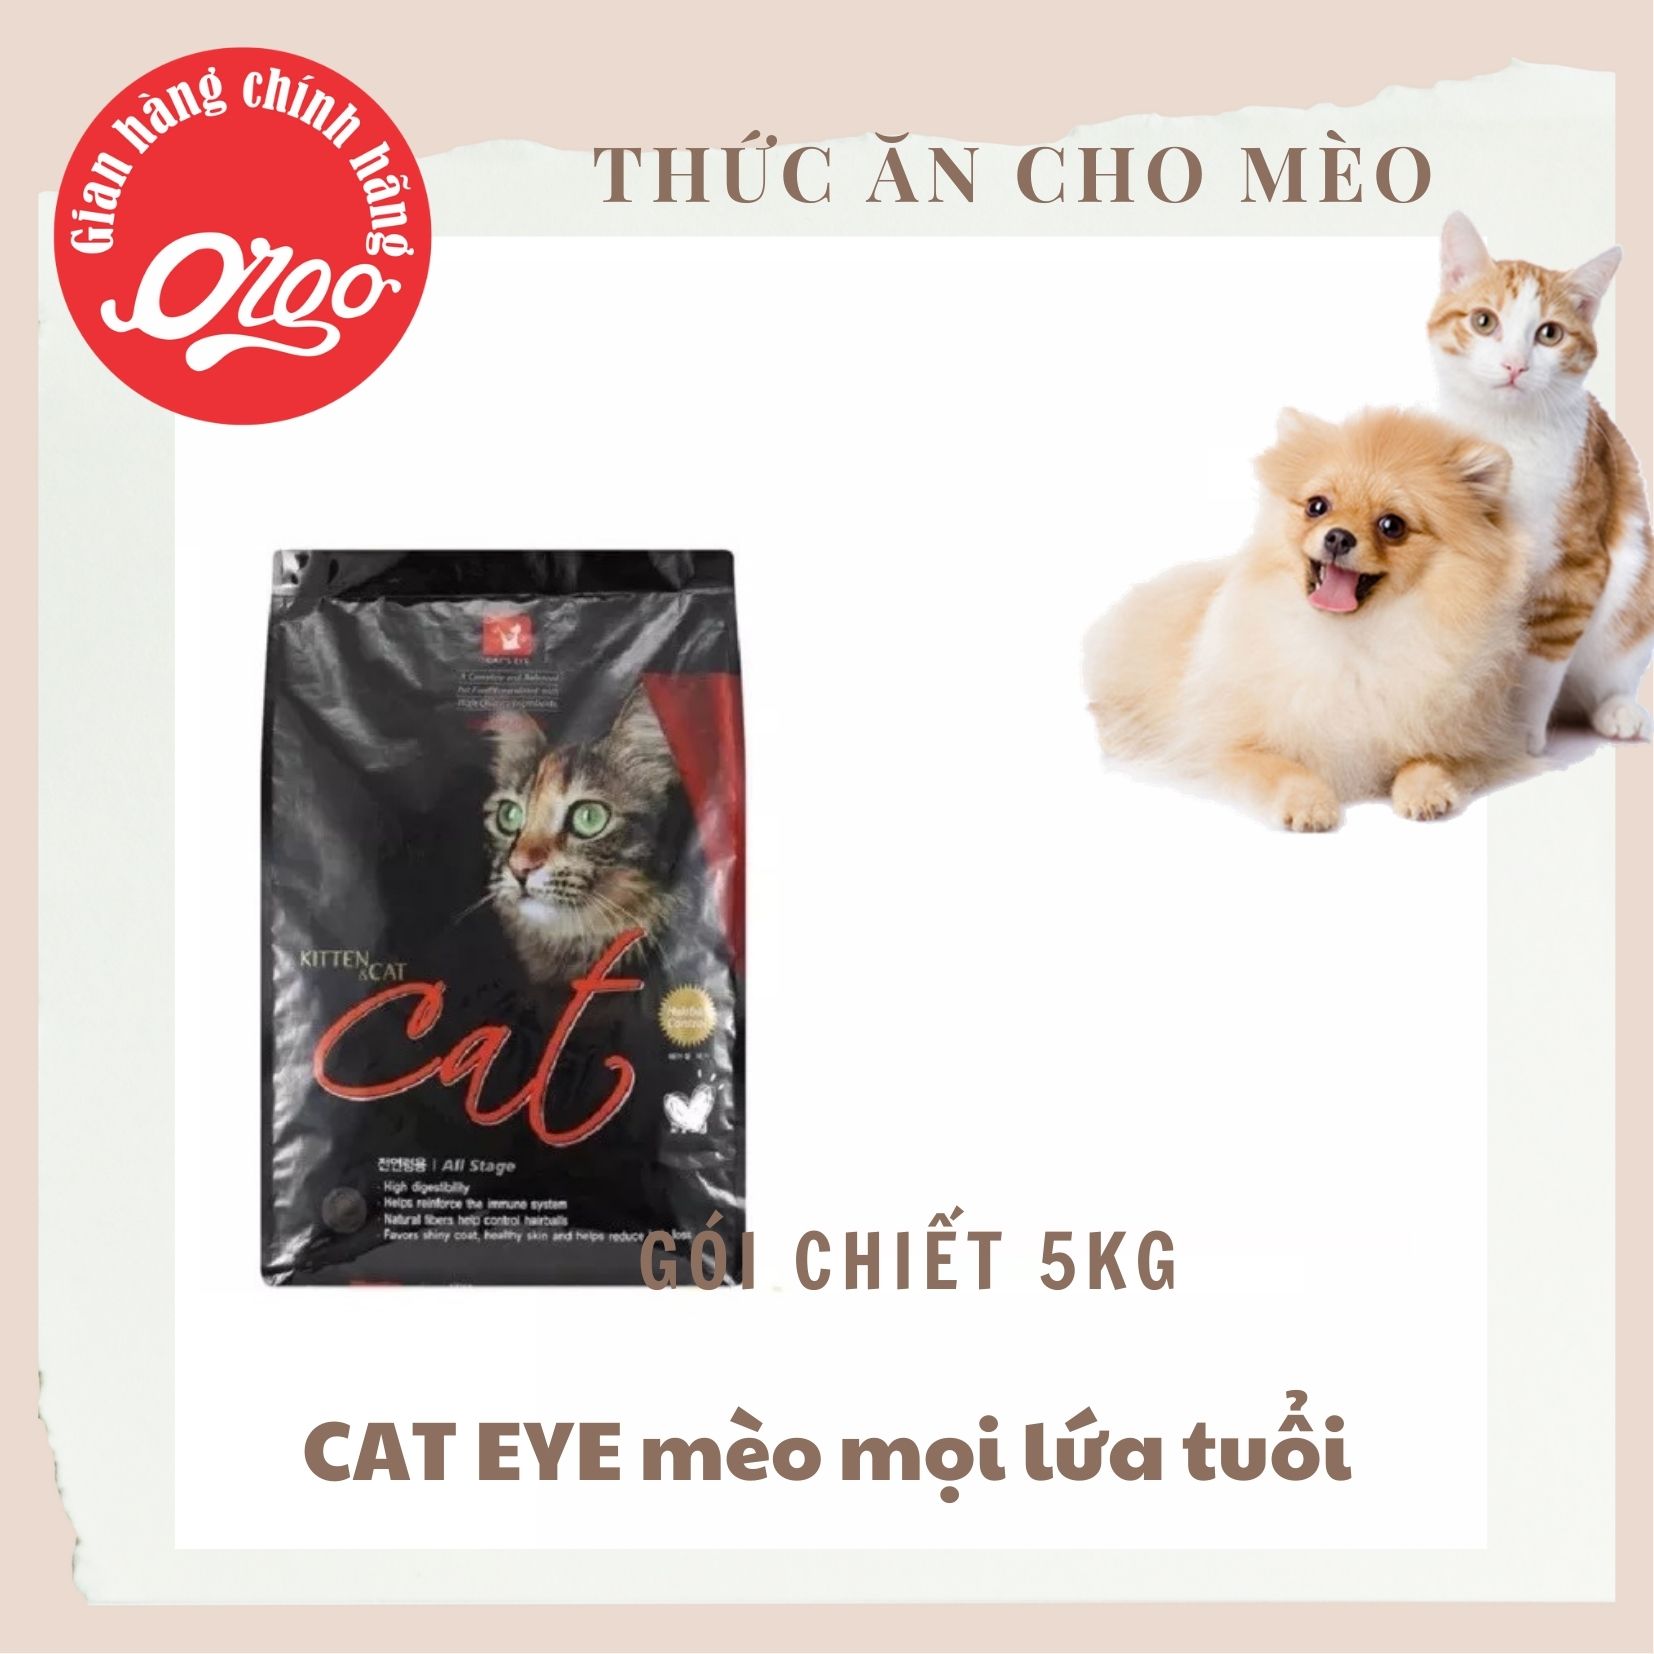 GIÁ SIÊU RẺ Thức Ăn Cho Mèo Cats eye túi chiết 5 kg  Cat s eye Hàn Quốc